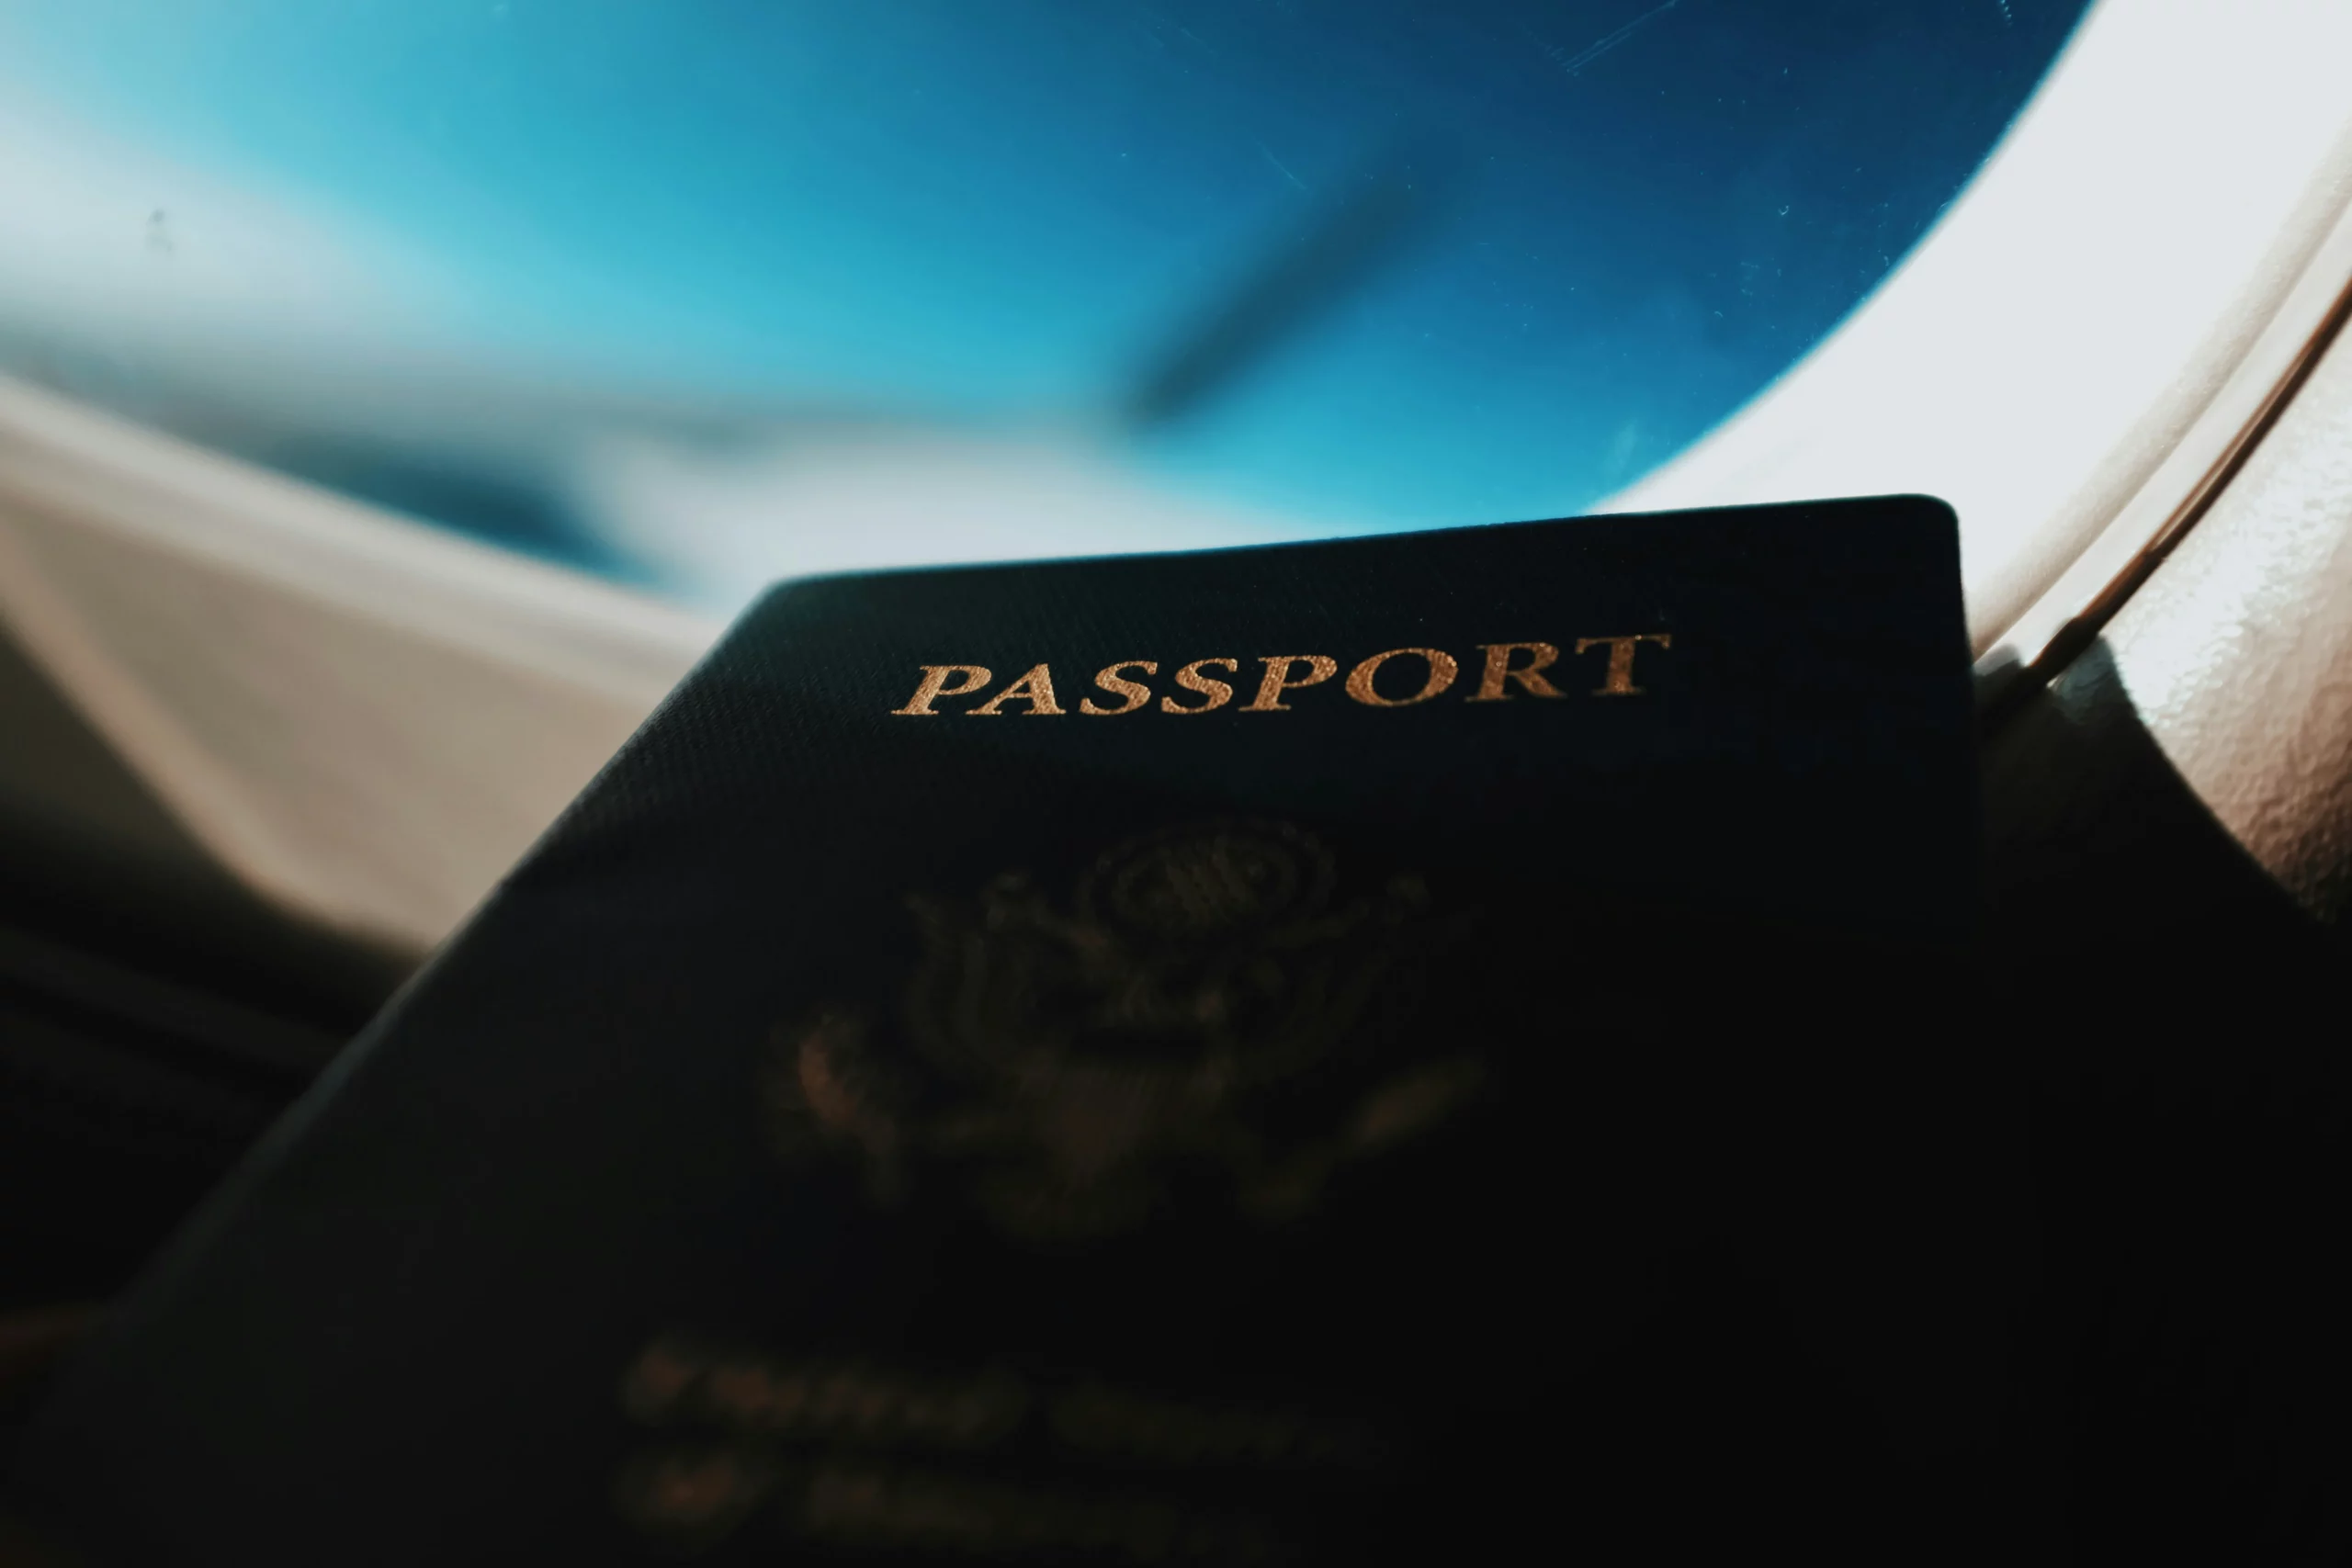 دریافت پاسپورت برای افراد مختلف